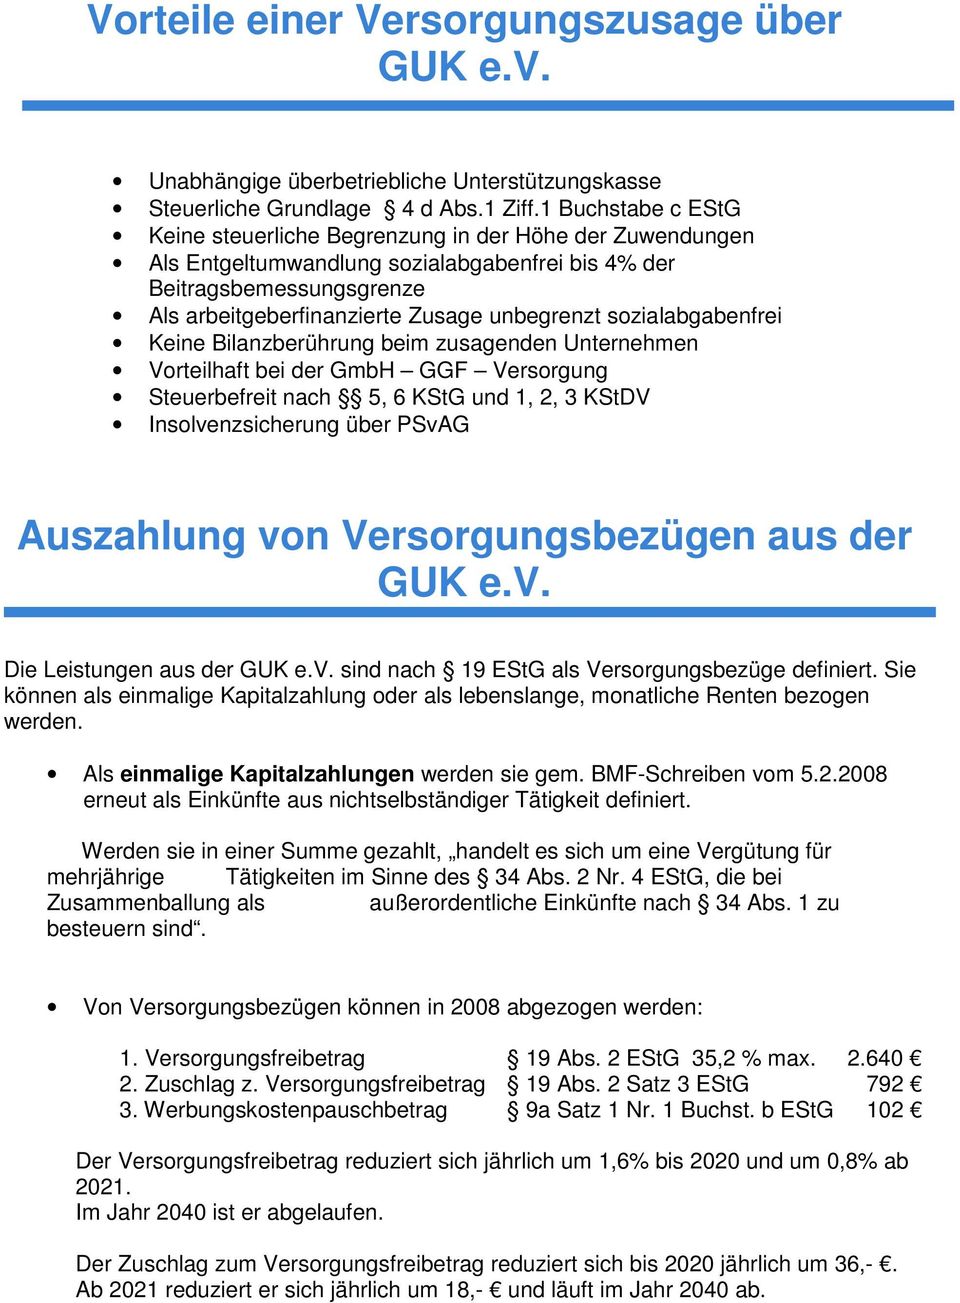 sozialabgabenfrei Keine Bilanzberührung beim zusagenden Unternehmen Vorteilhaft bei der GmbH GGF Versorgung Steuerbefreit nach 5, 6 KStG und 1, 2, 3 KStDV Insolvenzsicherung über PSvAG Auszahlung von